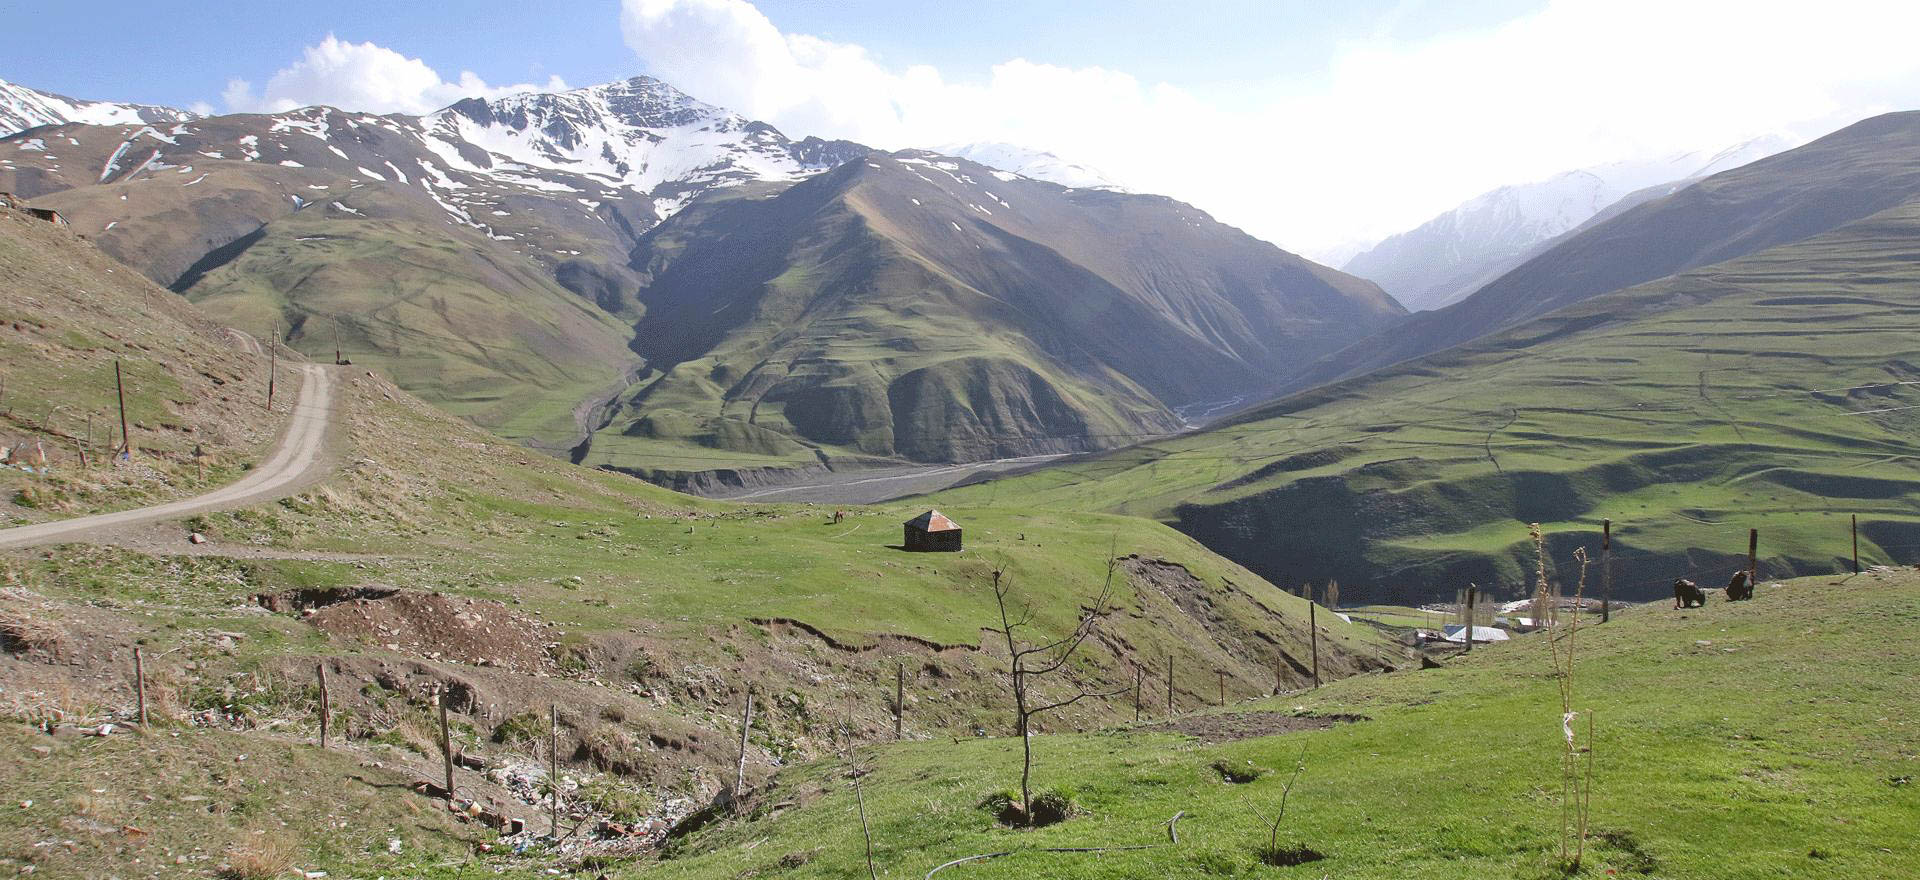 Scenery of the Caucasus mountains - Azerbaijan holidays